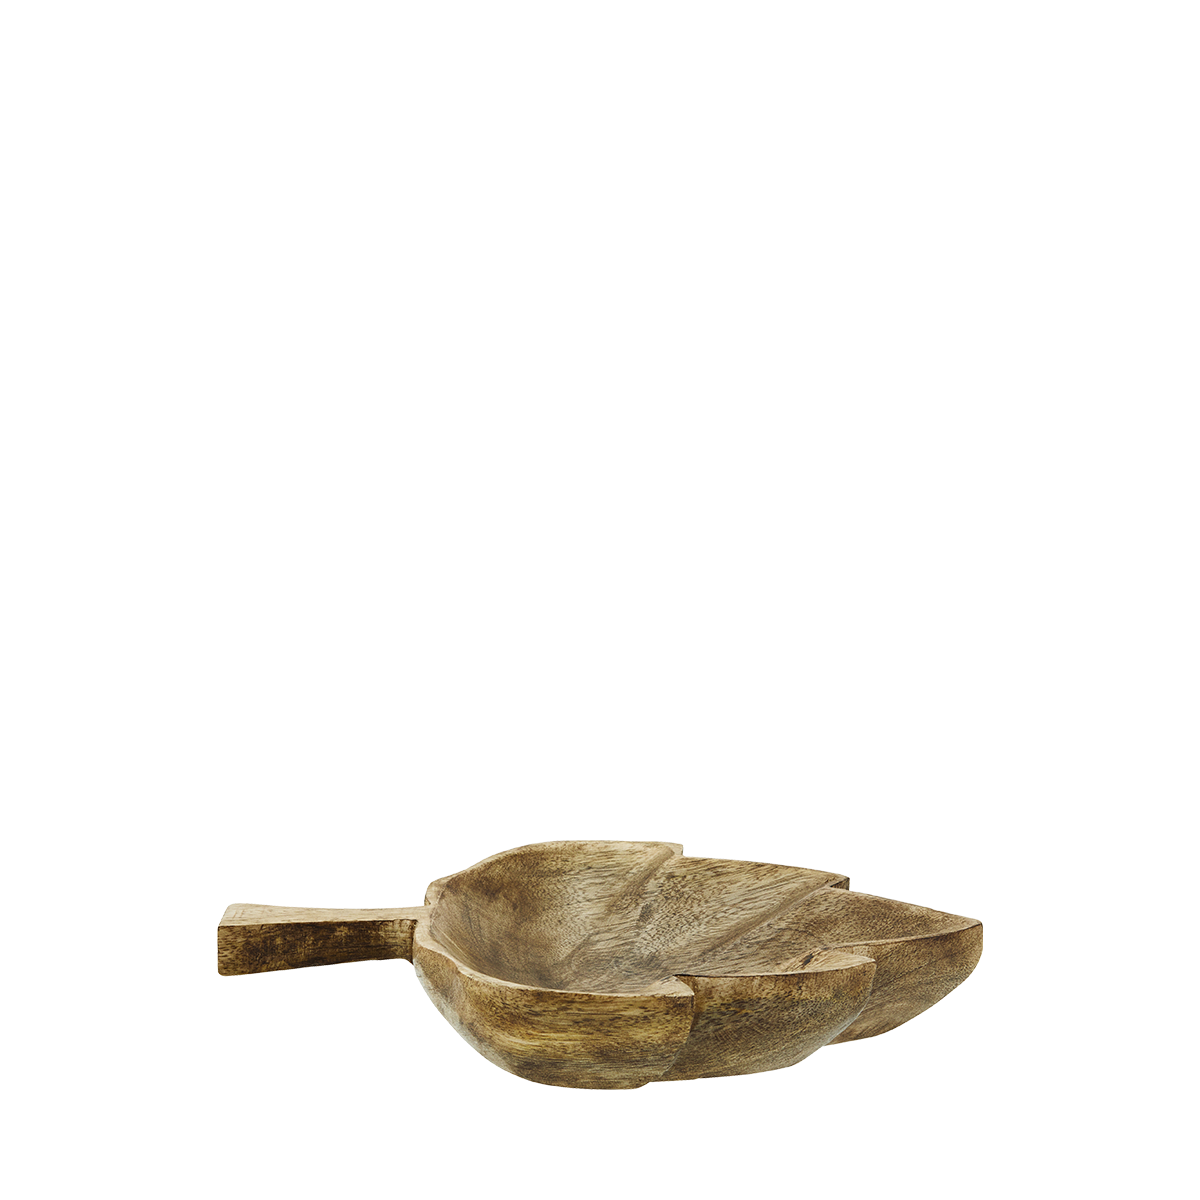 Wooden serving bowl